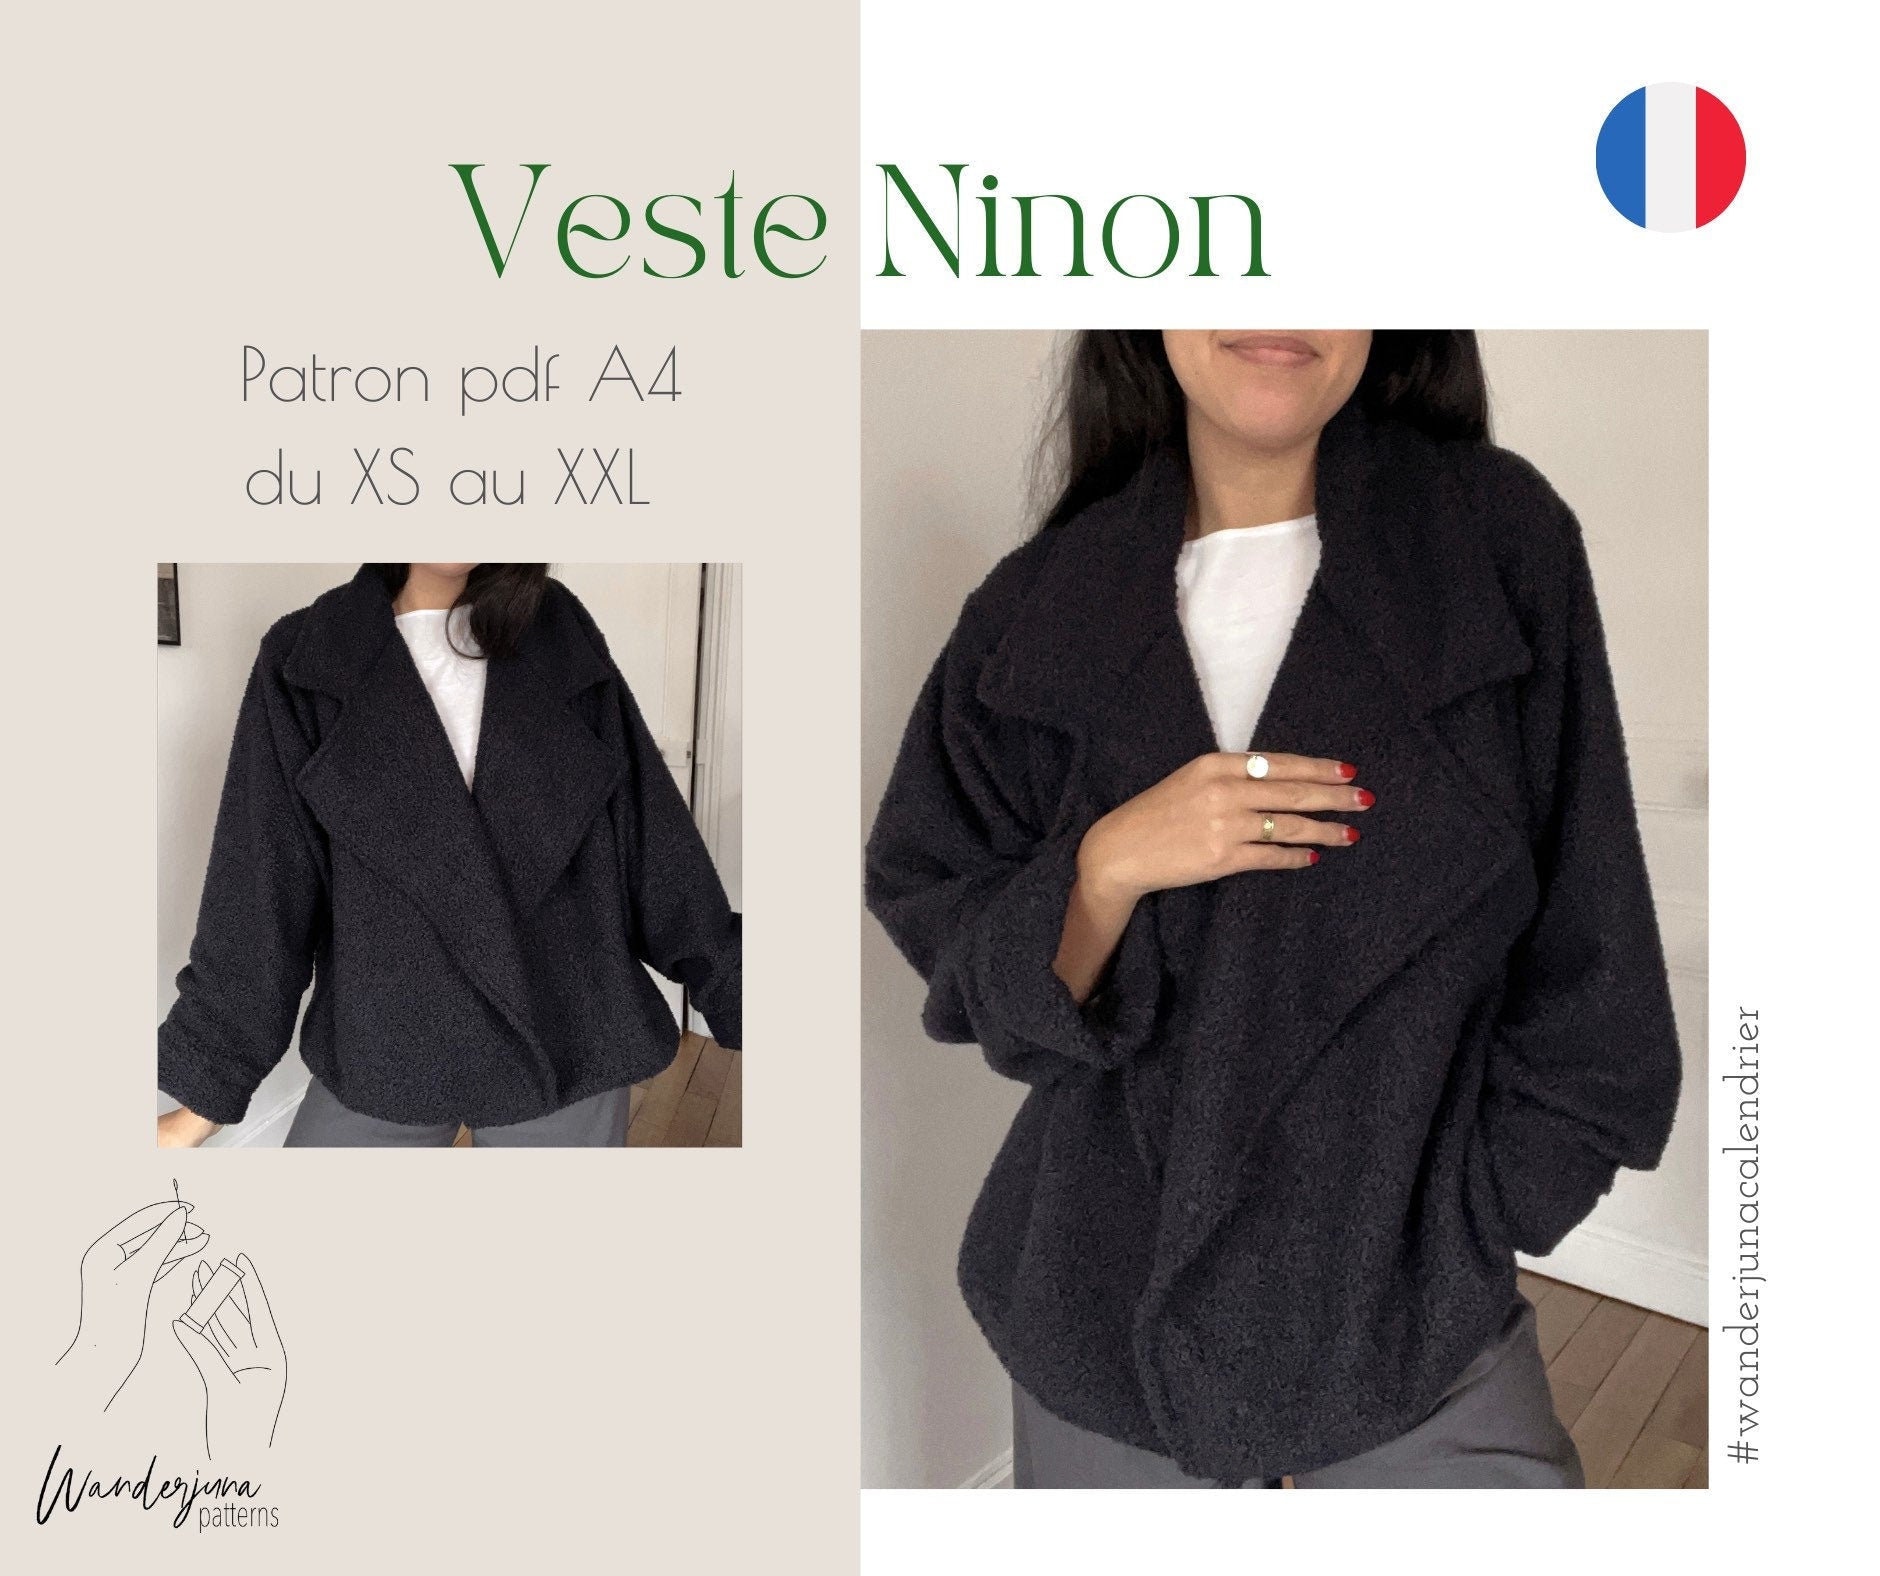 Variant Couscous Hip Veste Ninon PATRON PDF A4 in French Only/ En Français - Etsy India